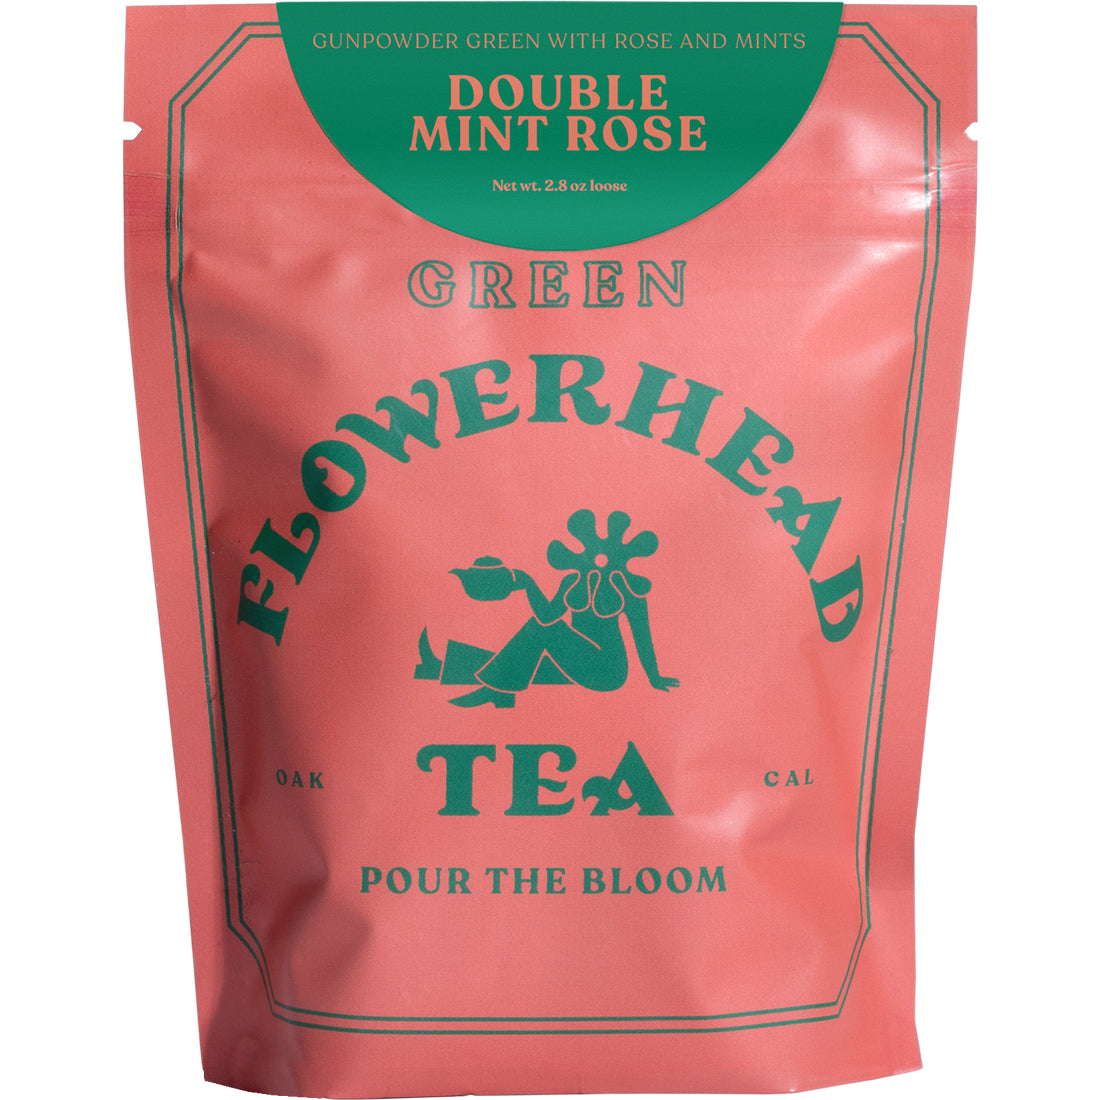 Flowerhead Tea - Double Mint Rose FLOWERHEAD TEA 